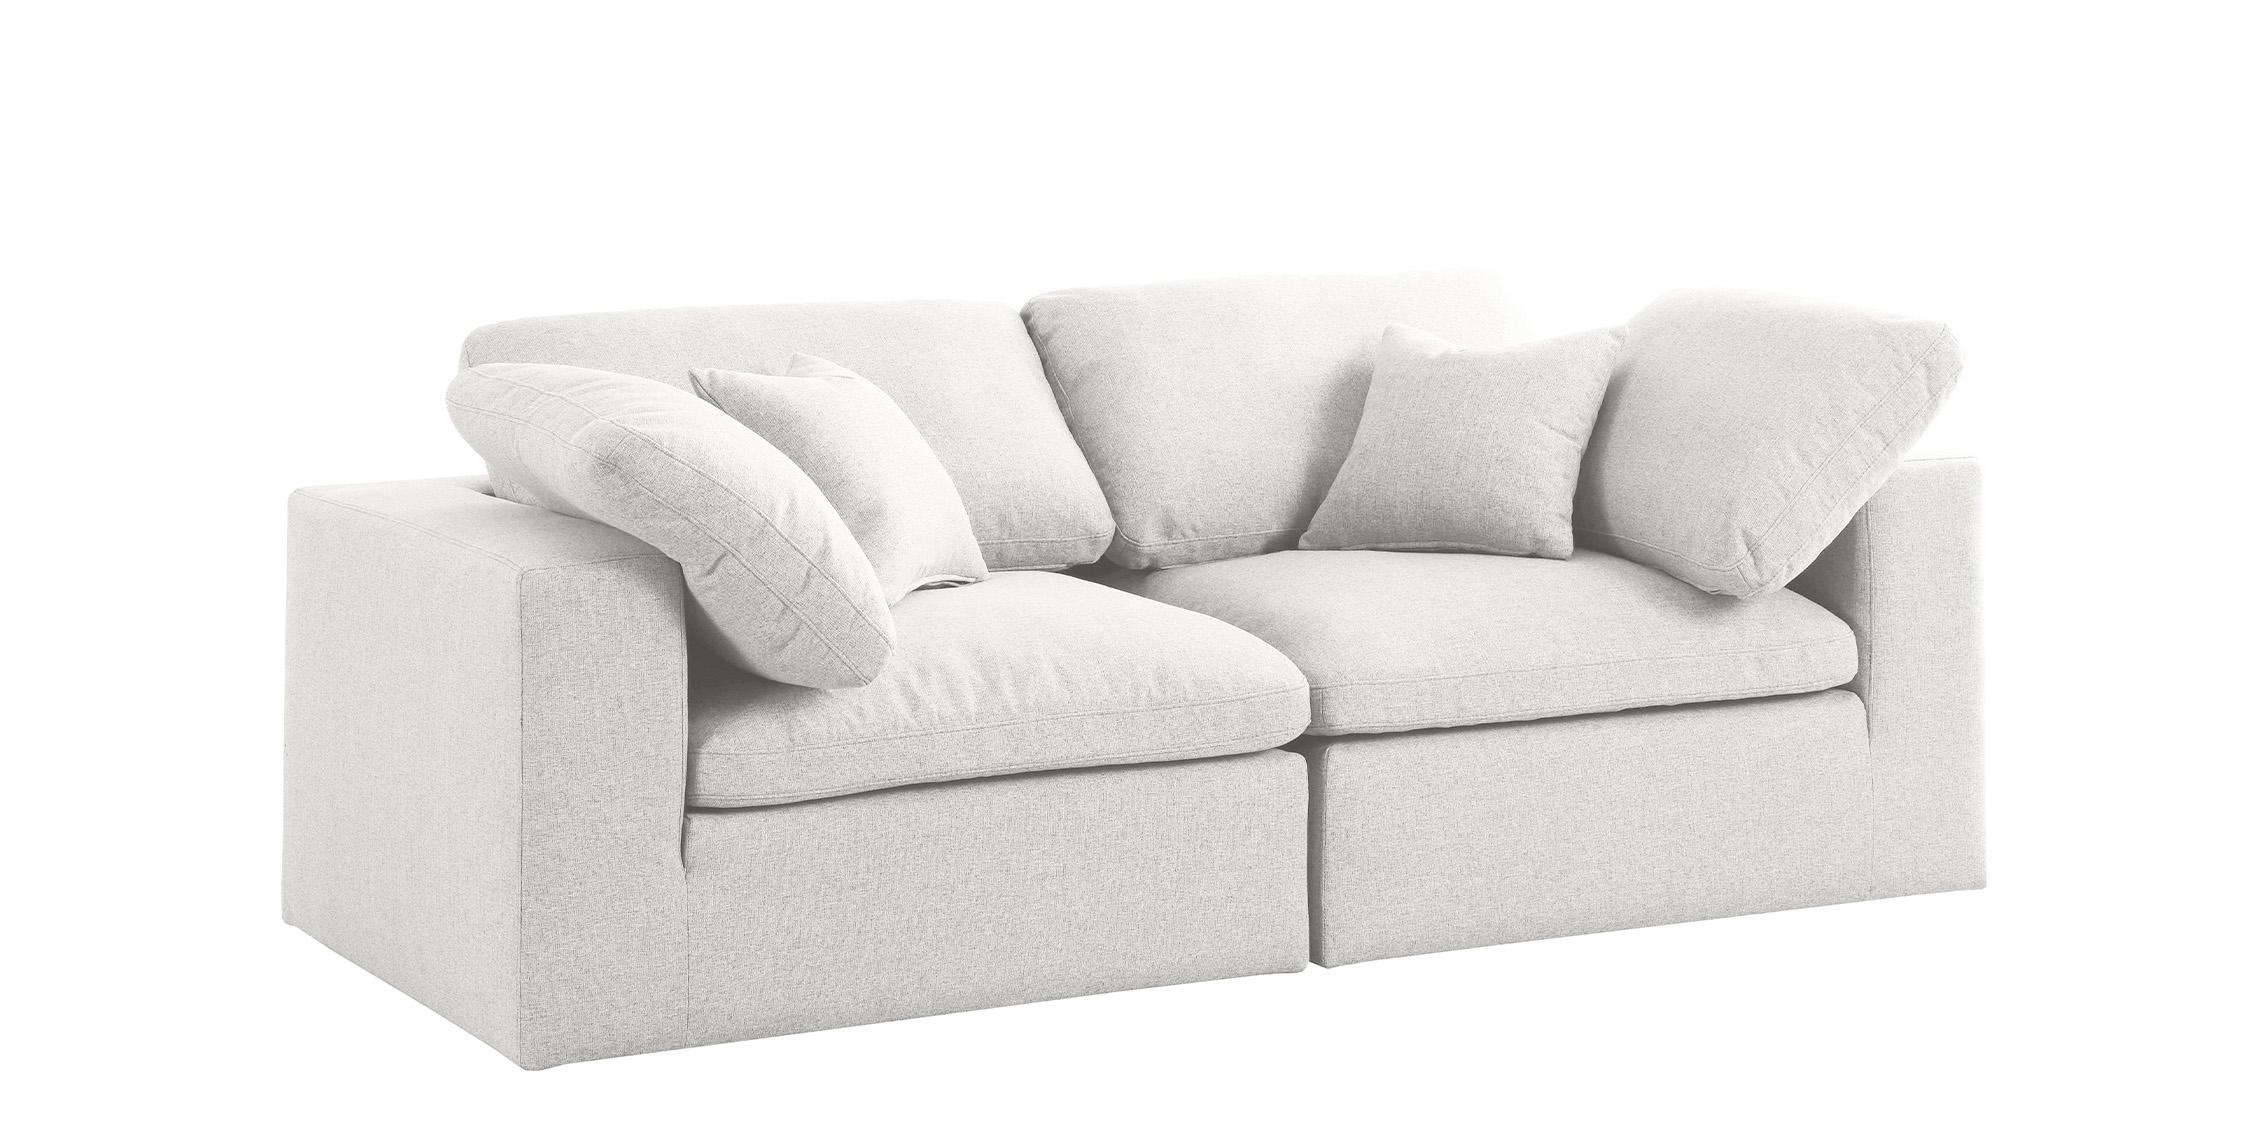 

    
Serene Cream Linen Textured Fabric Deluxe Comfort Modular Sofa S80 Meridian
